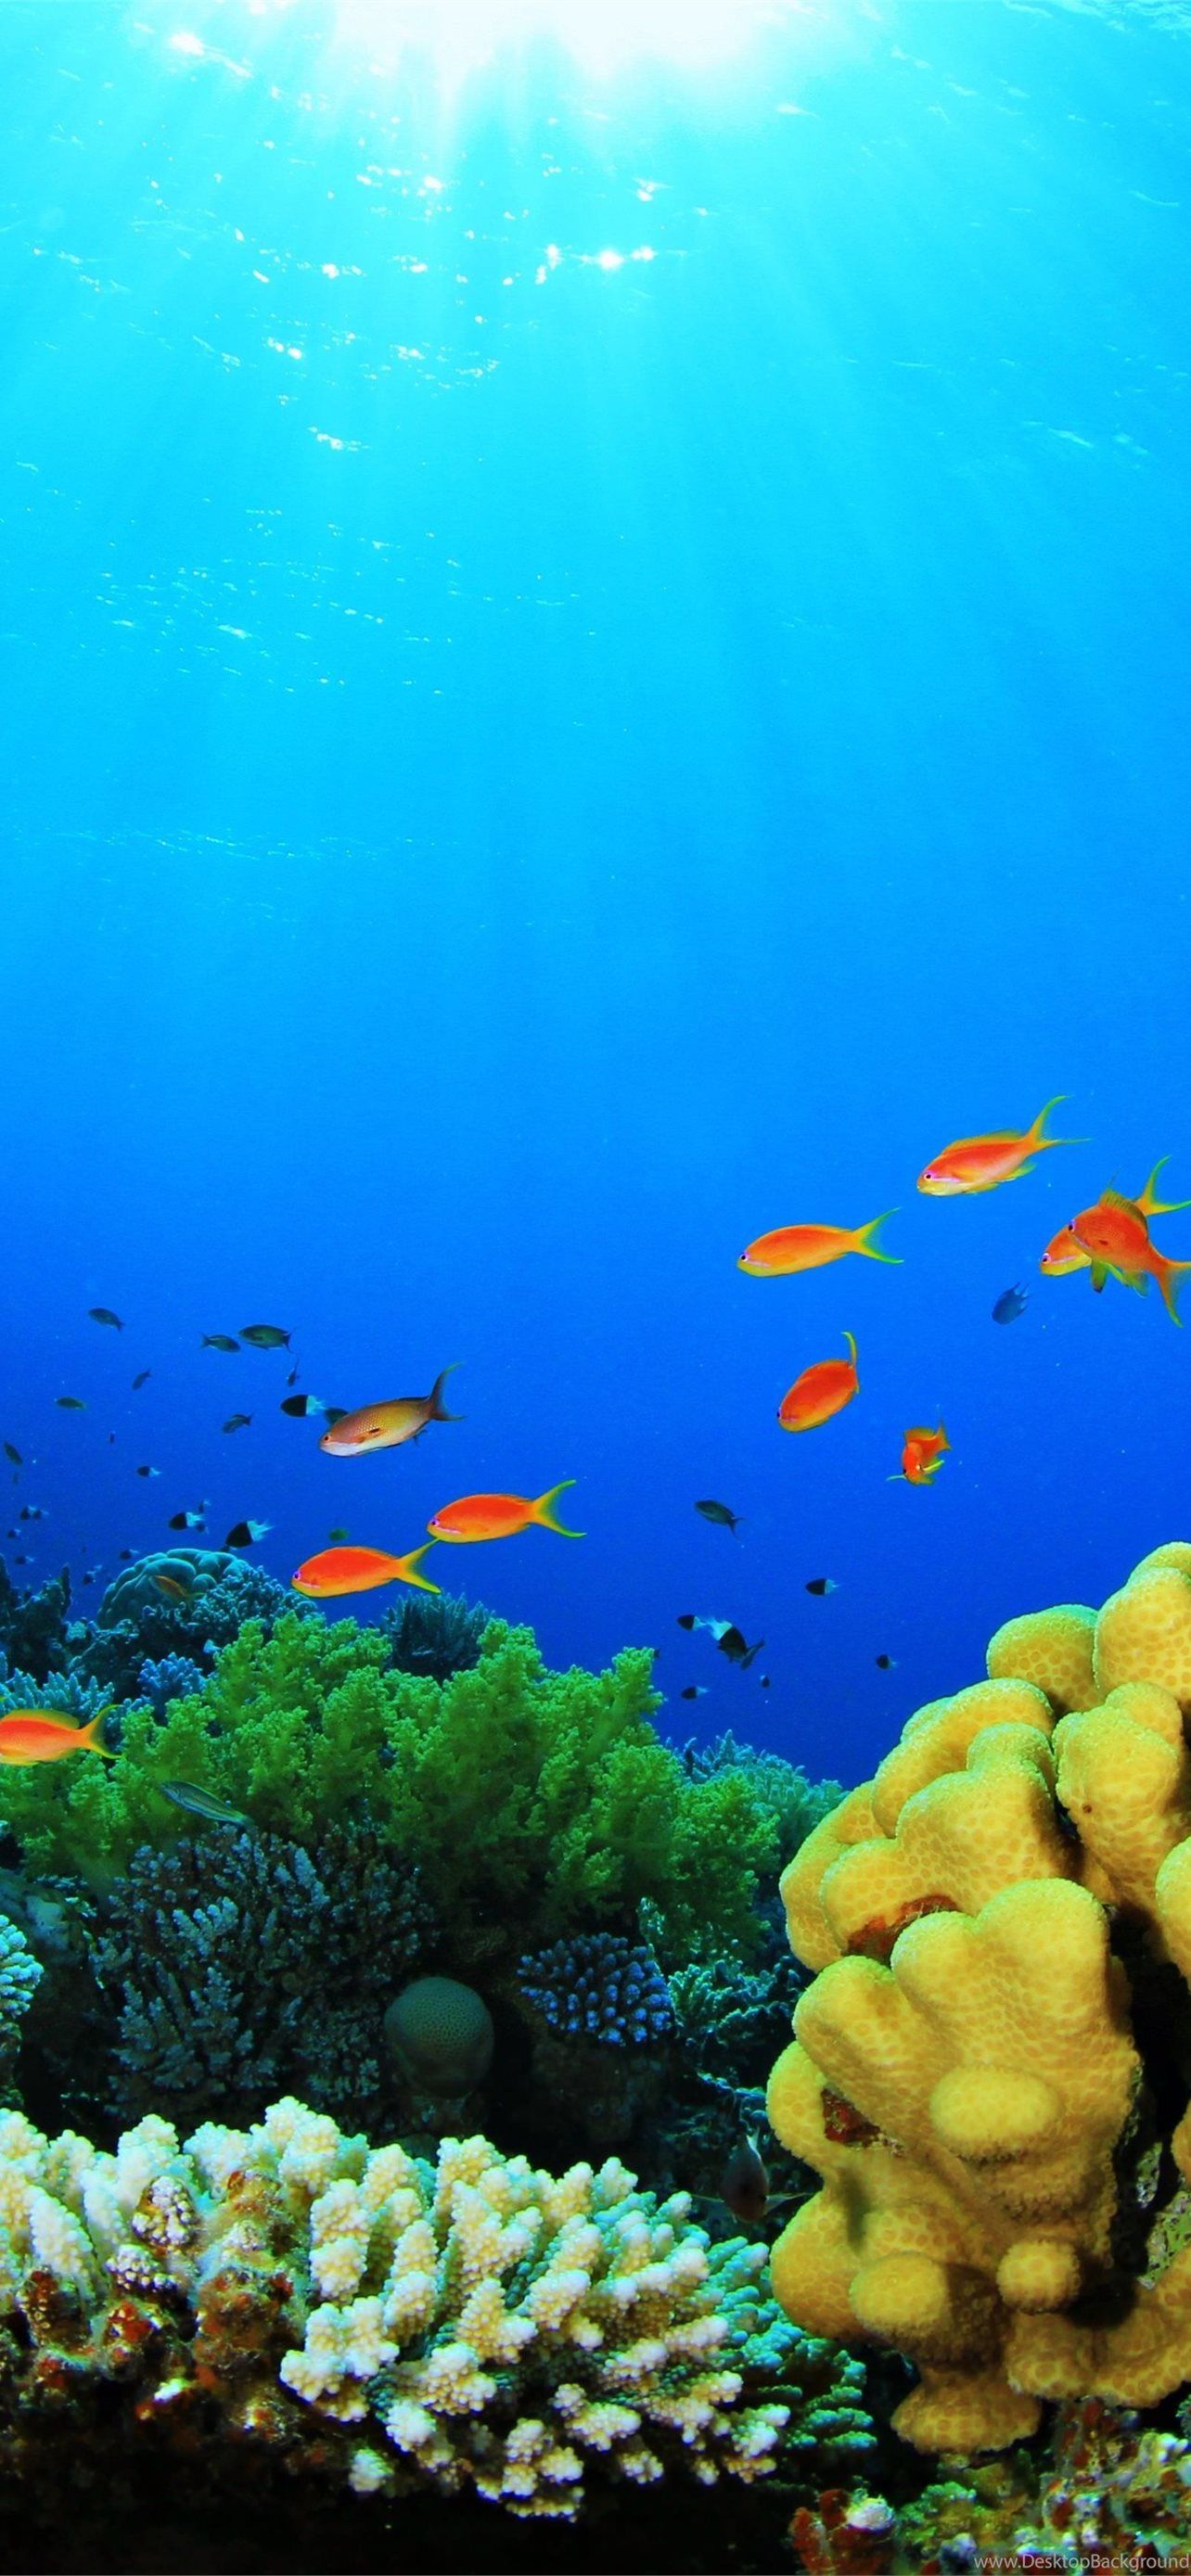  Aquarien Hintergrundbild 1284x2778. Best Aquarium iPhone HD Wallpaper